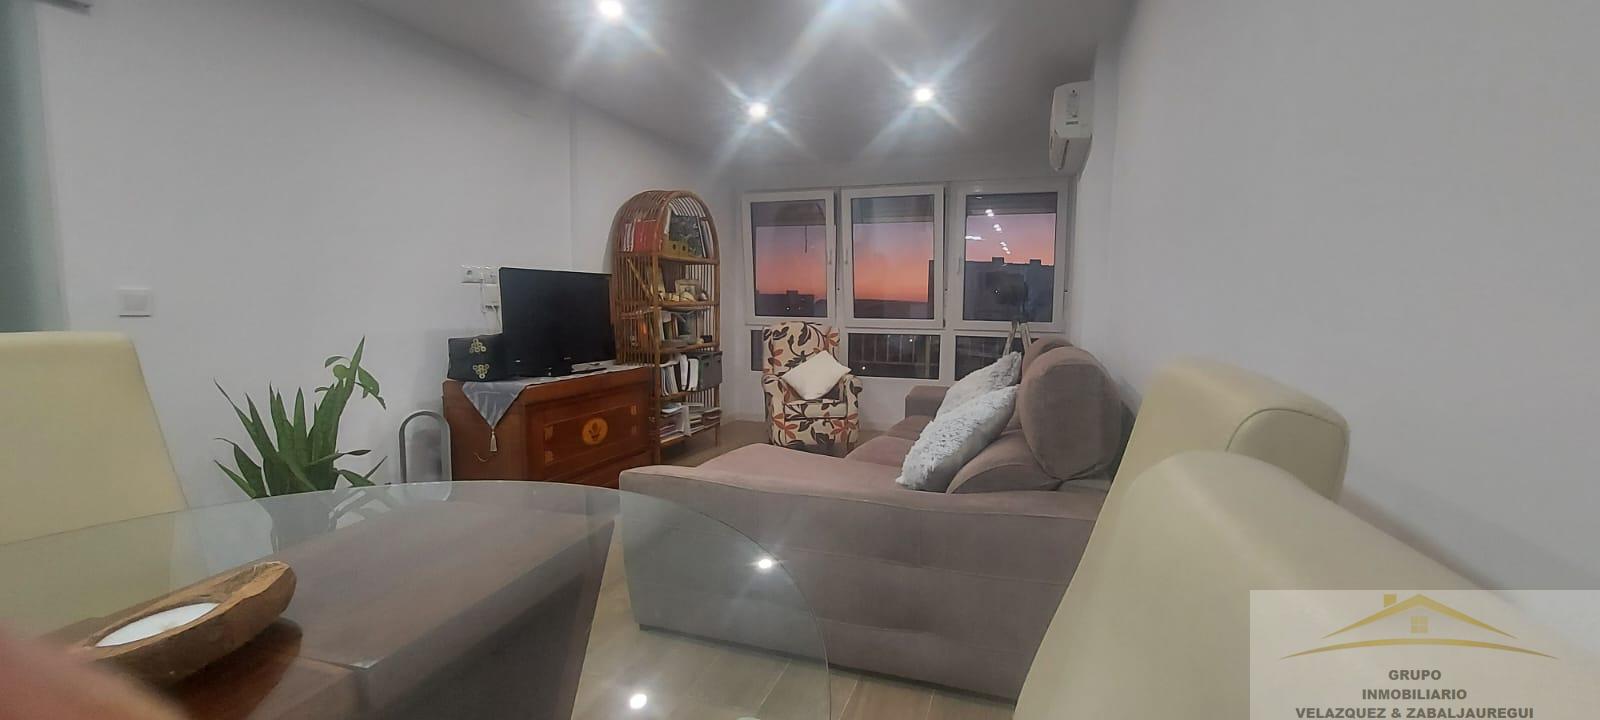 Verkoop van appartement in Alicante